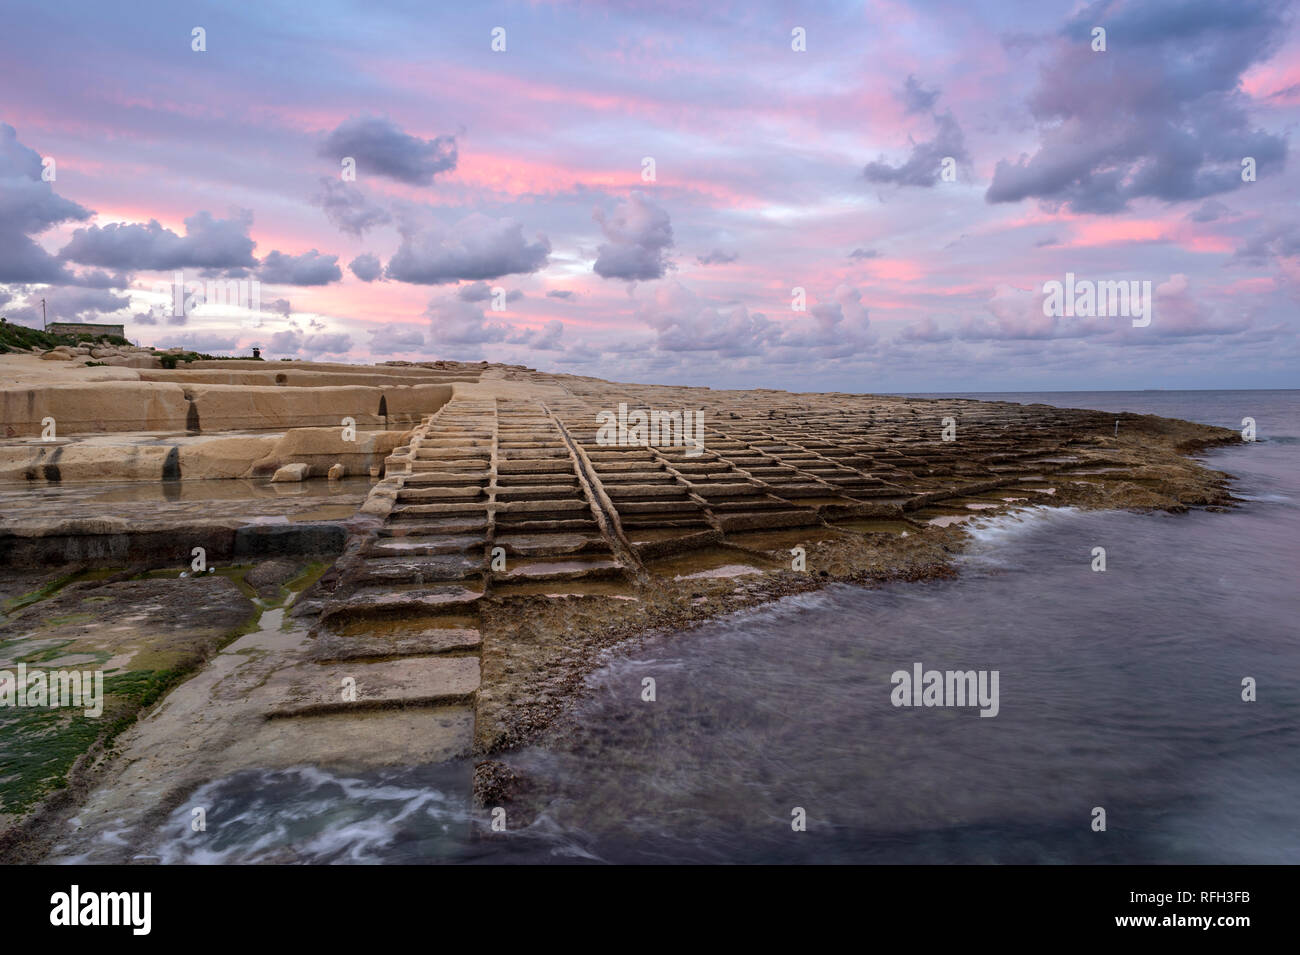 Salines sur la côte de l'IL-Blata, Malte au crépuscule. Banque D'Images